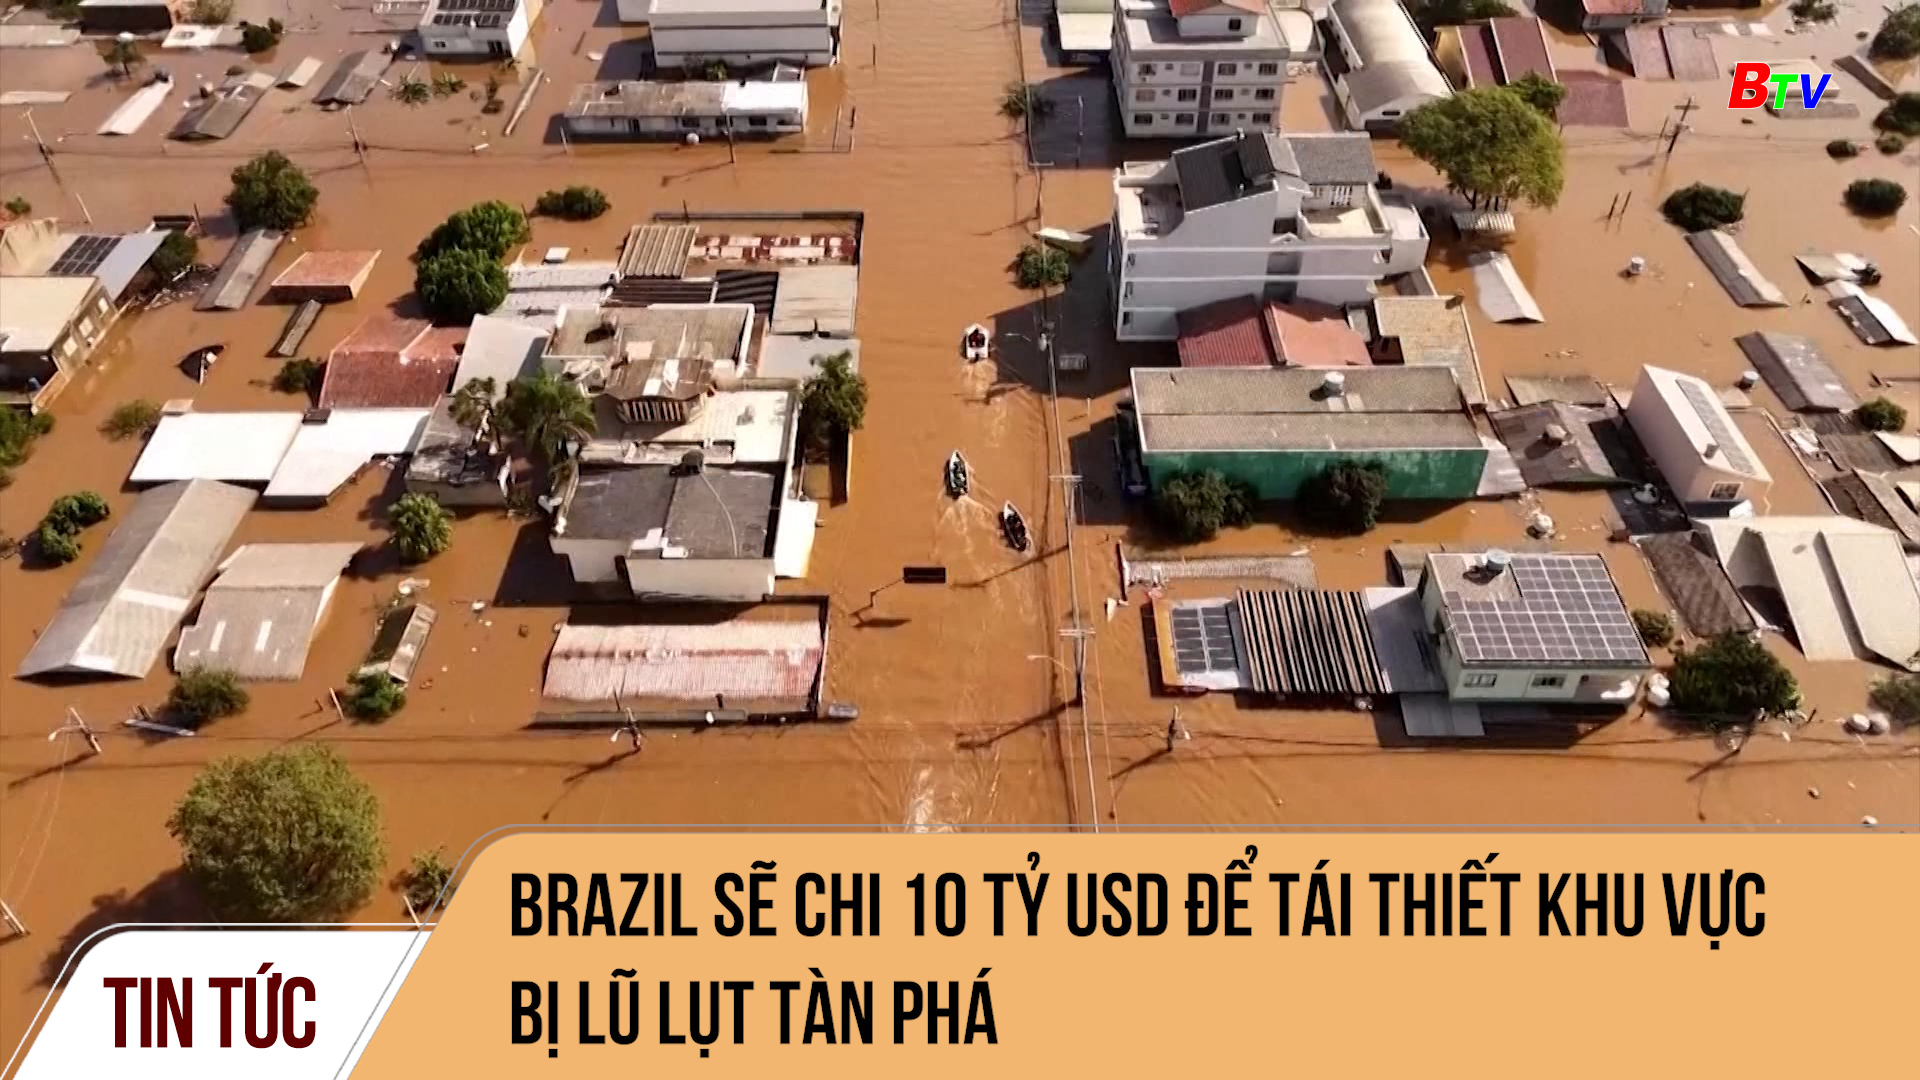 Brazil sẽ chi 10 tỷ USD để tái thiết khu vực bị lũ lụt tàn phá